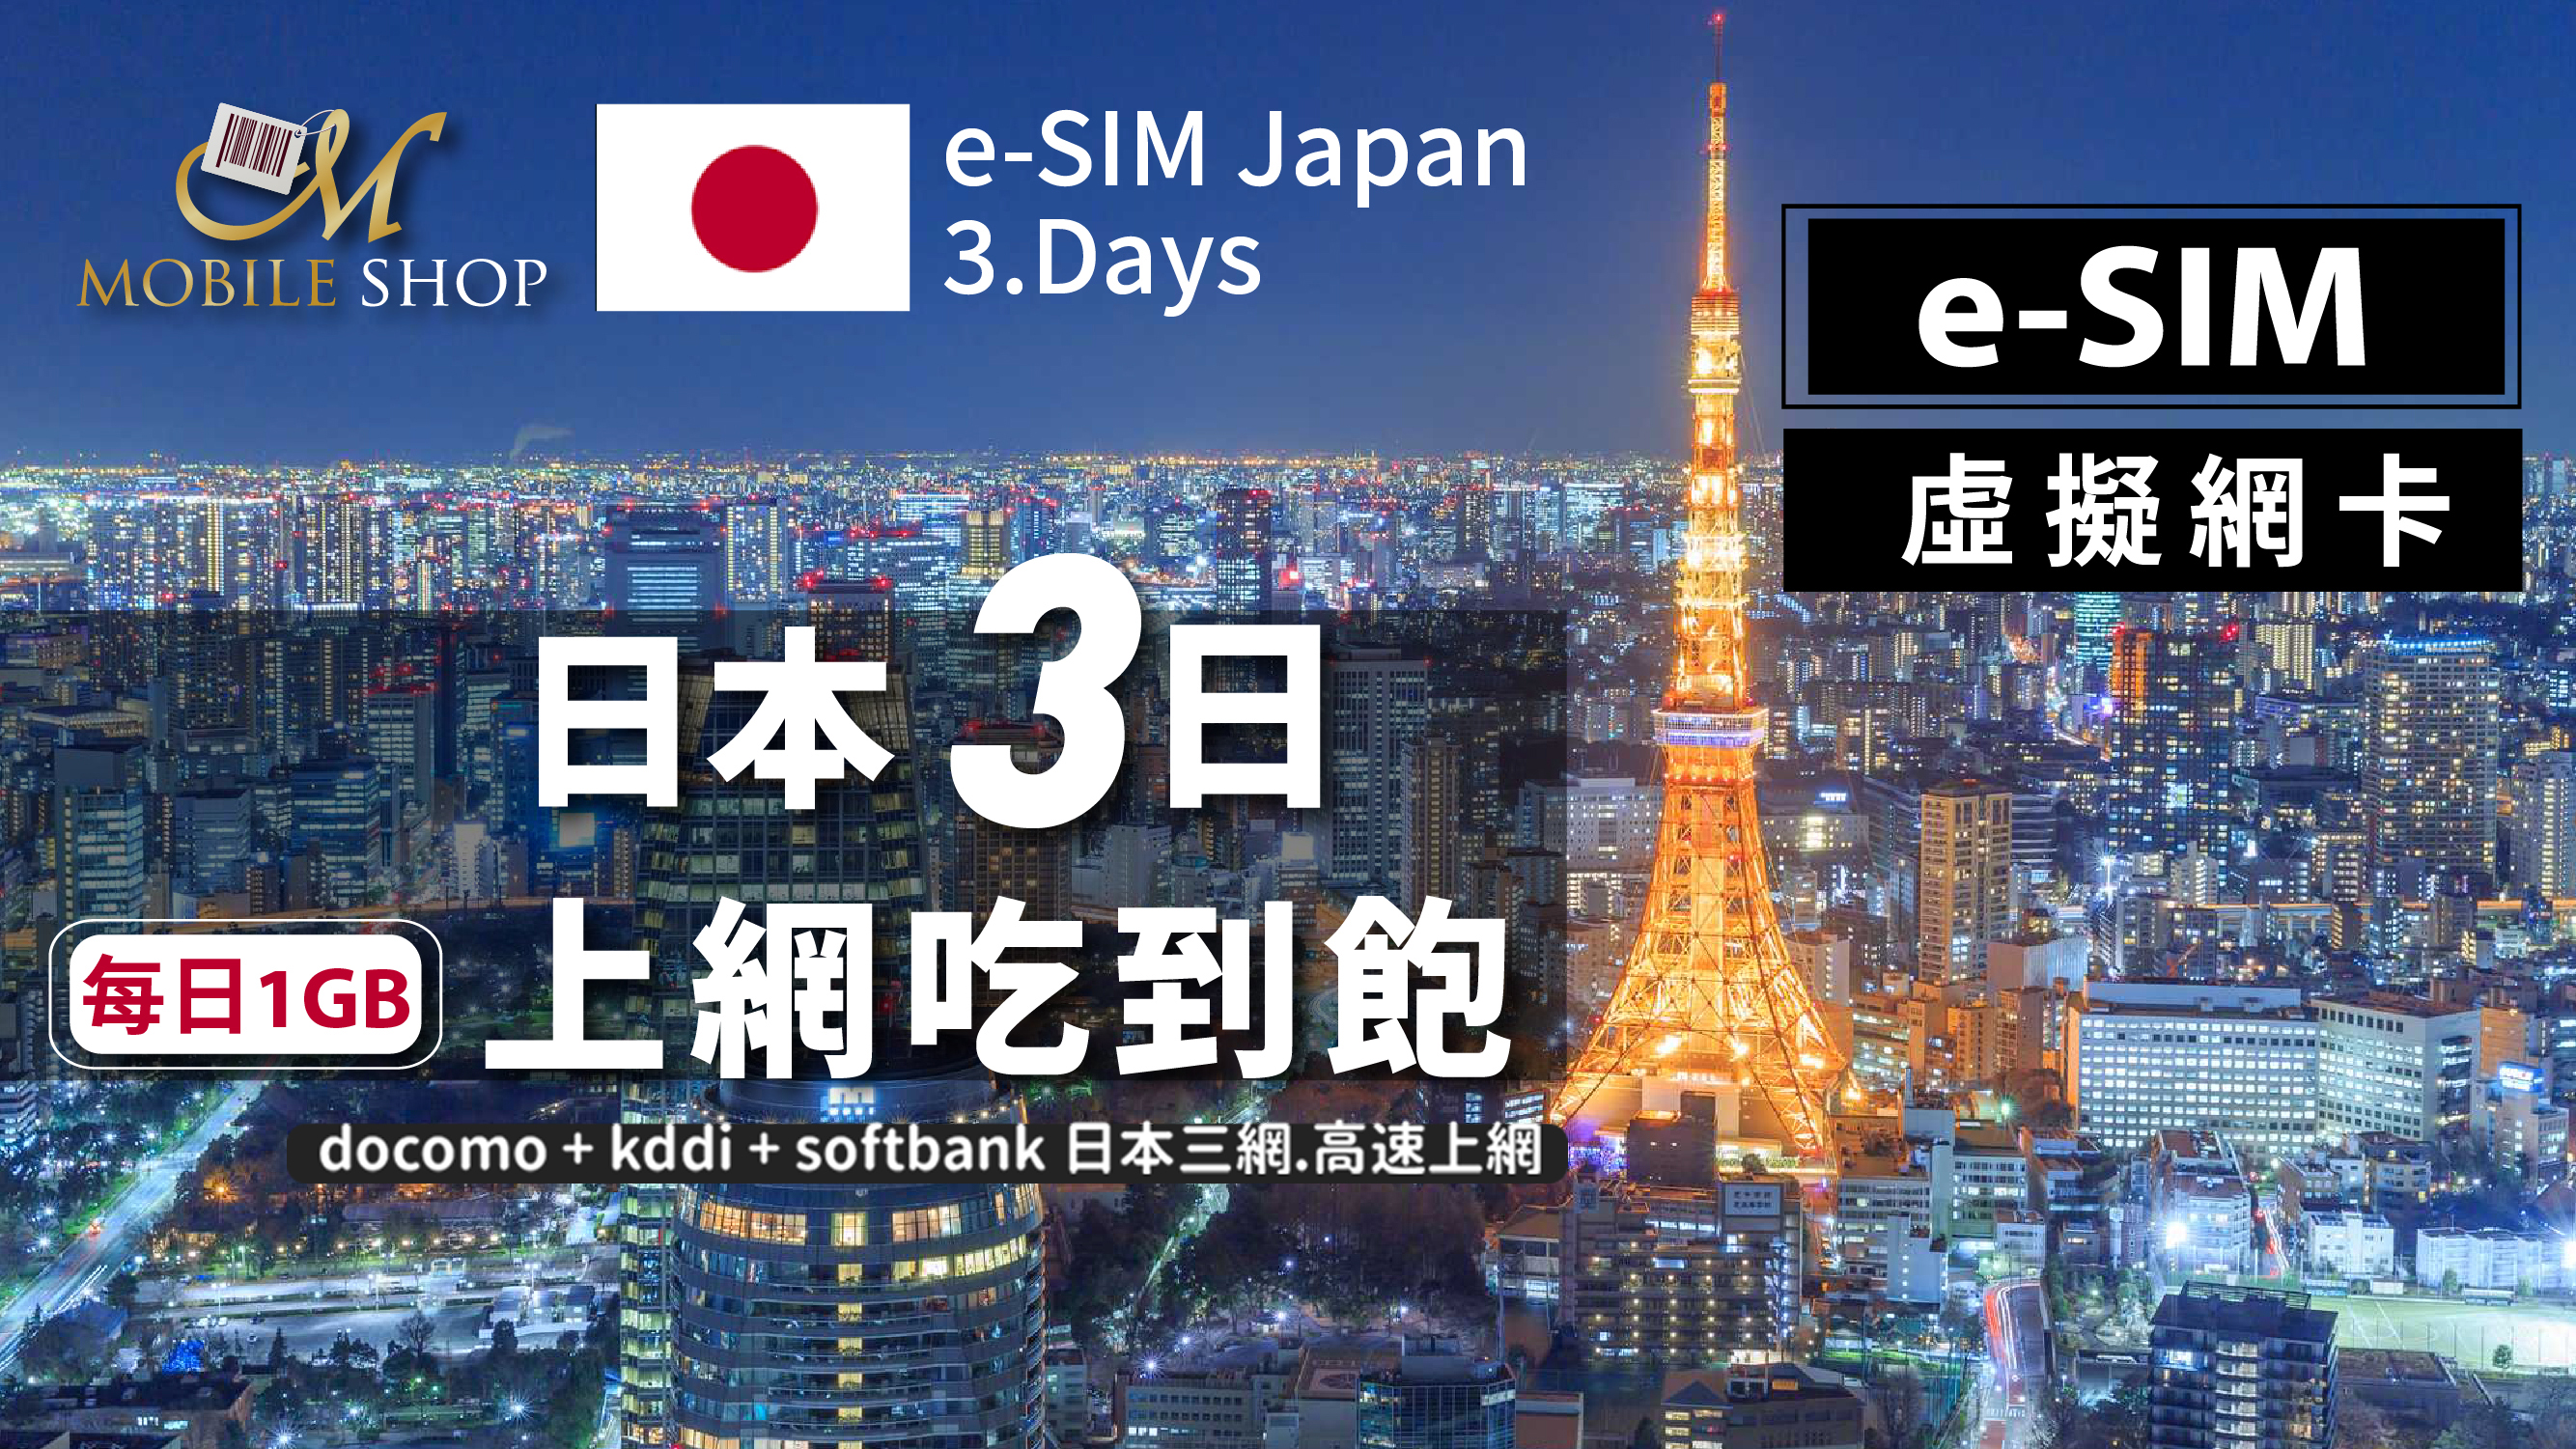 eSIM Japan 3days/1GB unlimited data